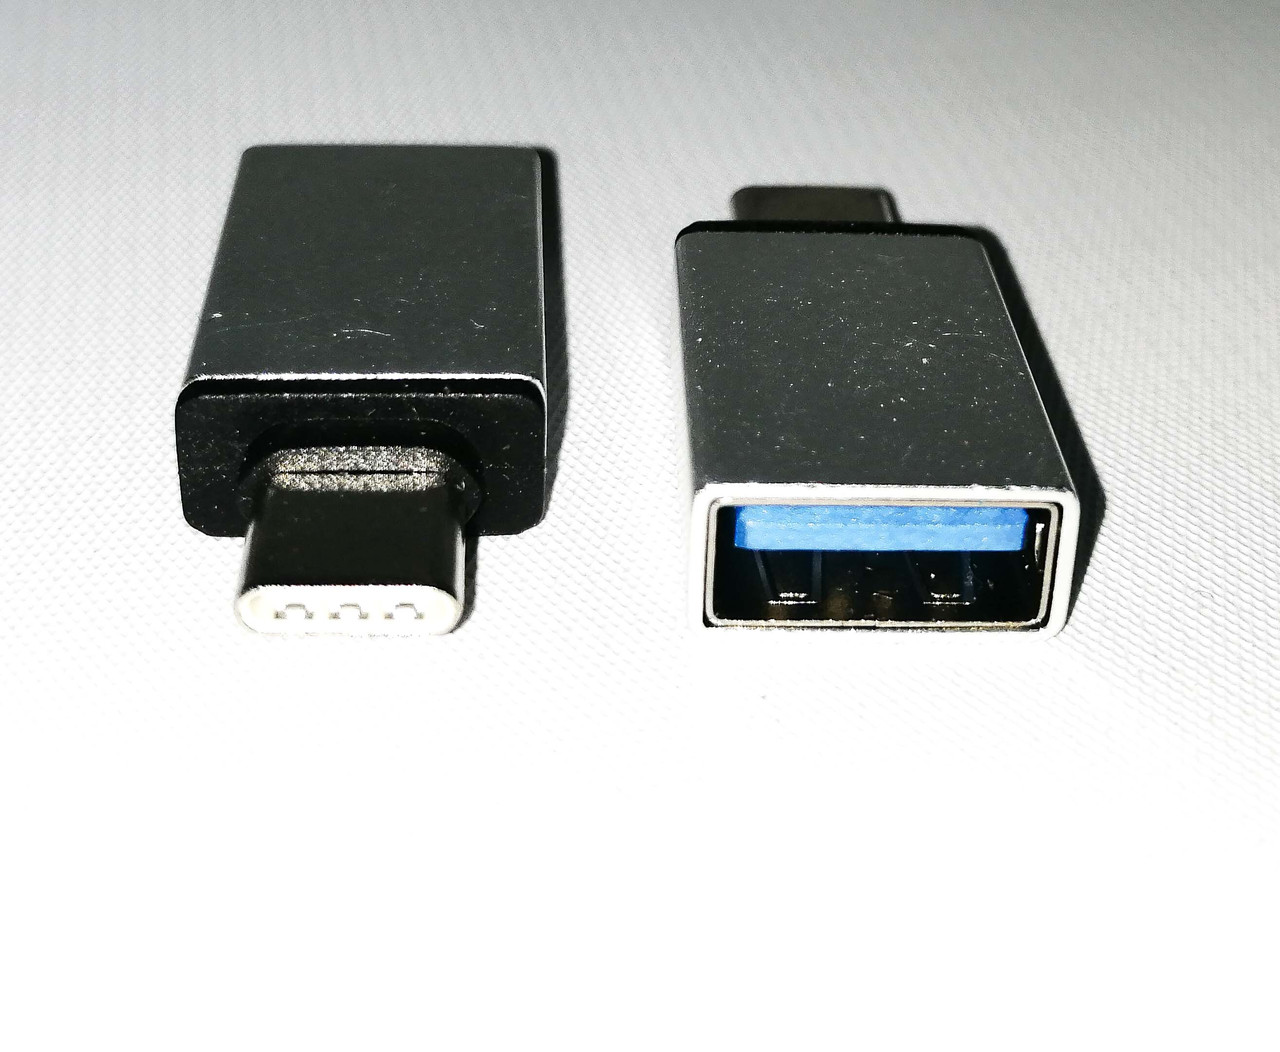  OTG USB- Type C: продажа, цена в . коннекторы для .